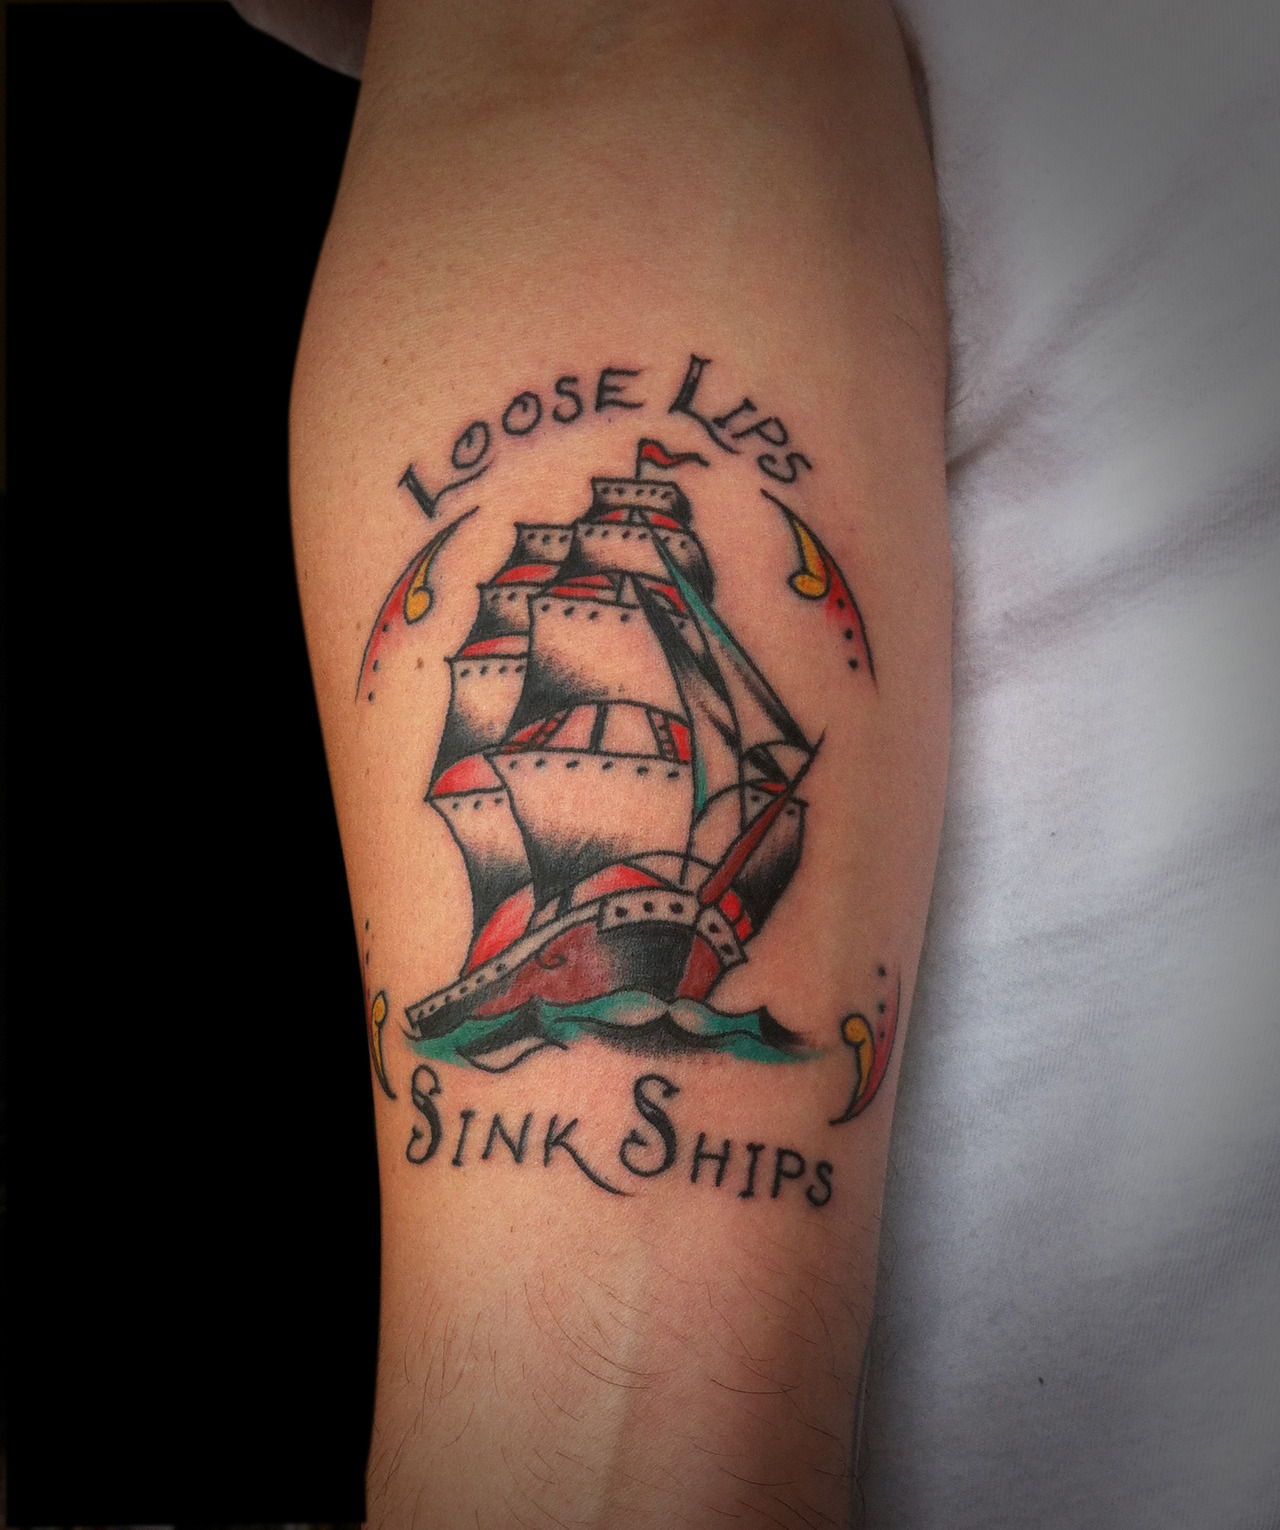 Loose Lips Sink Ships by tattooedheartstudios on DeviantArt